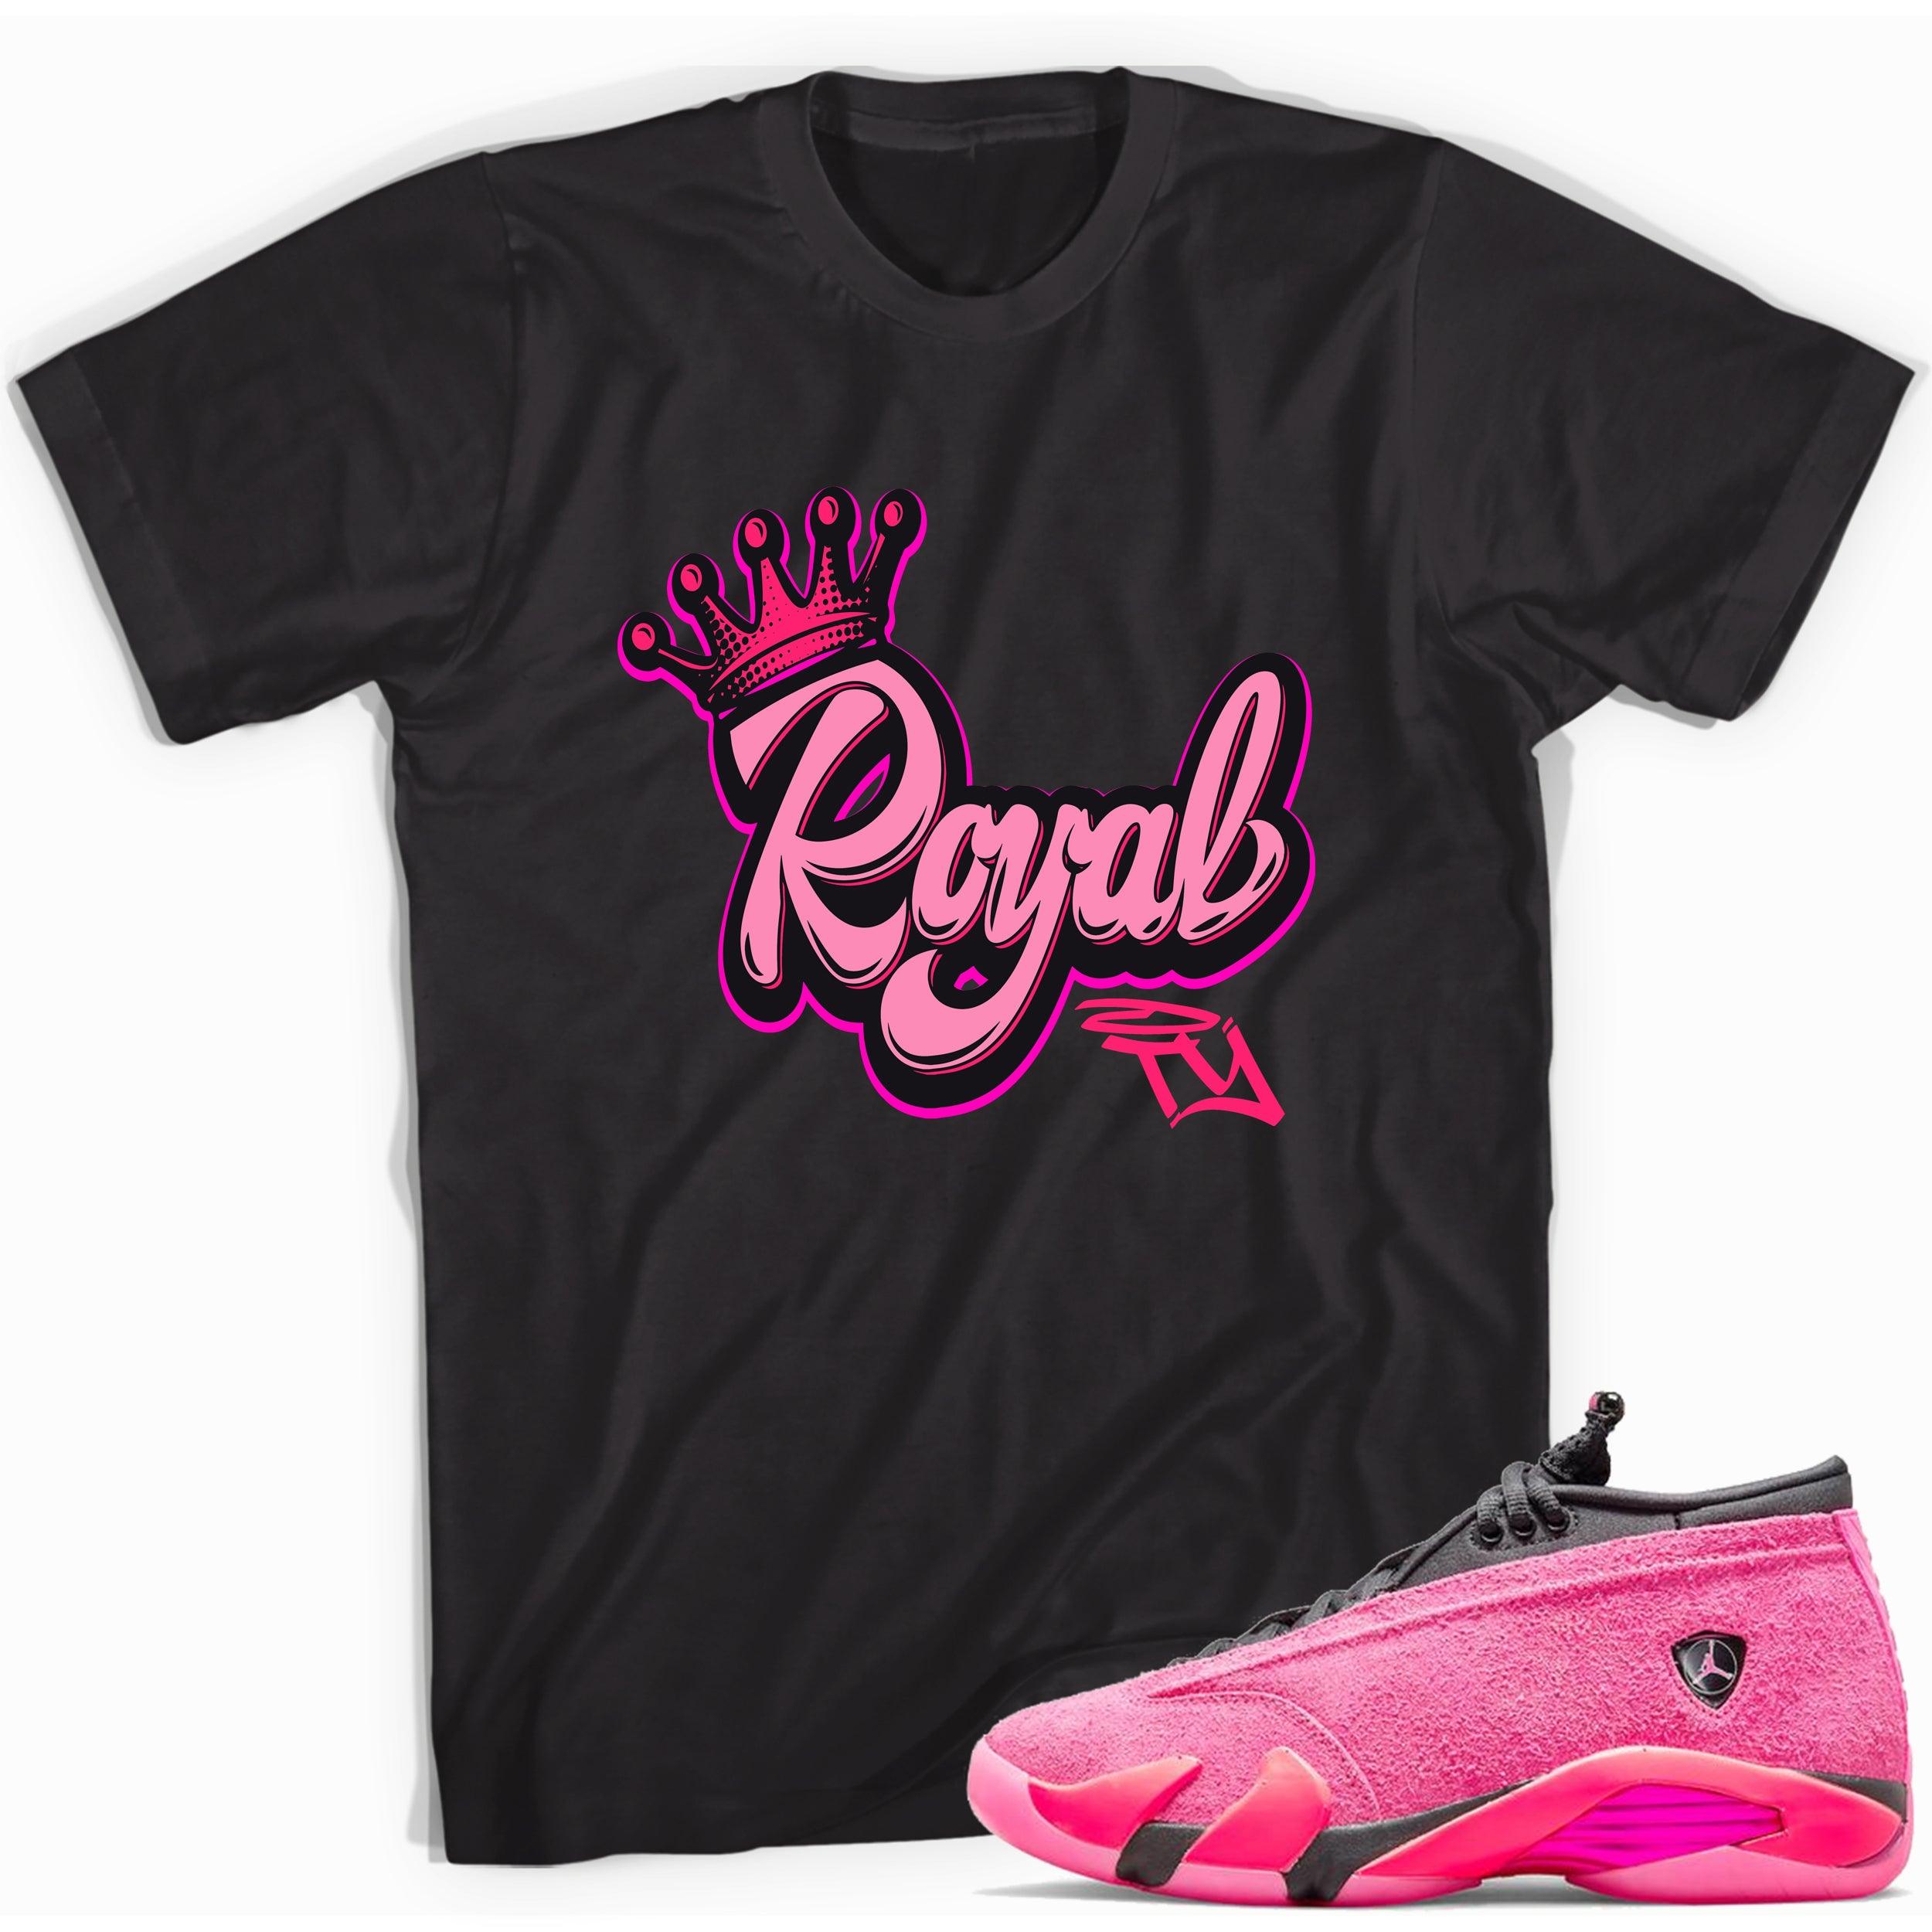 Black Royalty Shirt Jordan 14s Low Shocking Pink photo